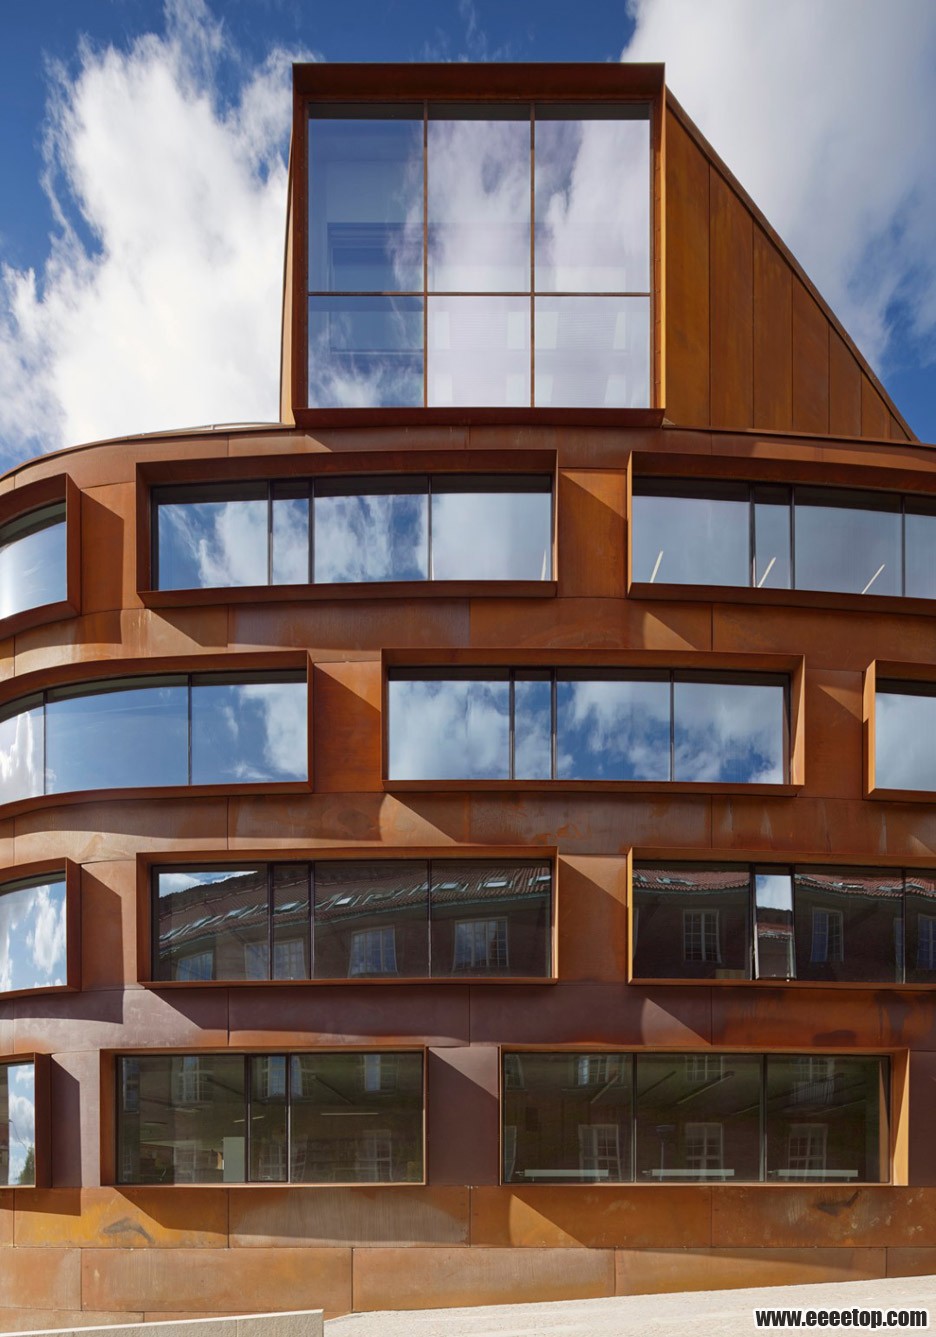 瑞典:斯德哥尔摩皇家理工学院,看看别人家的建